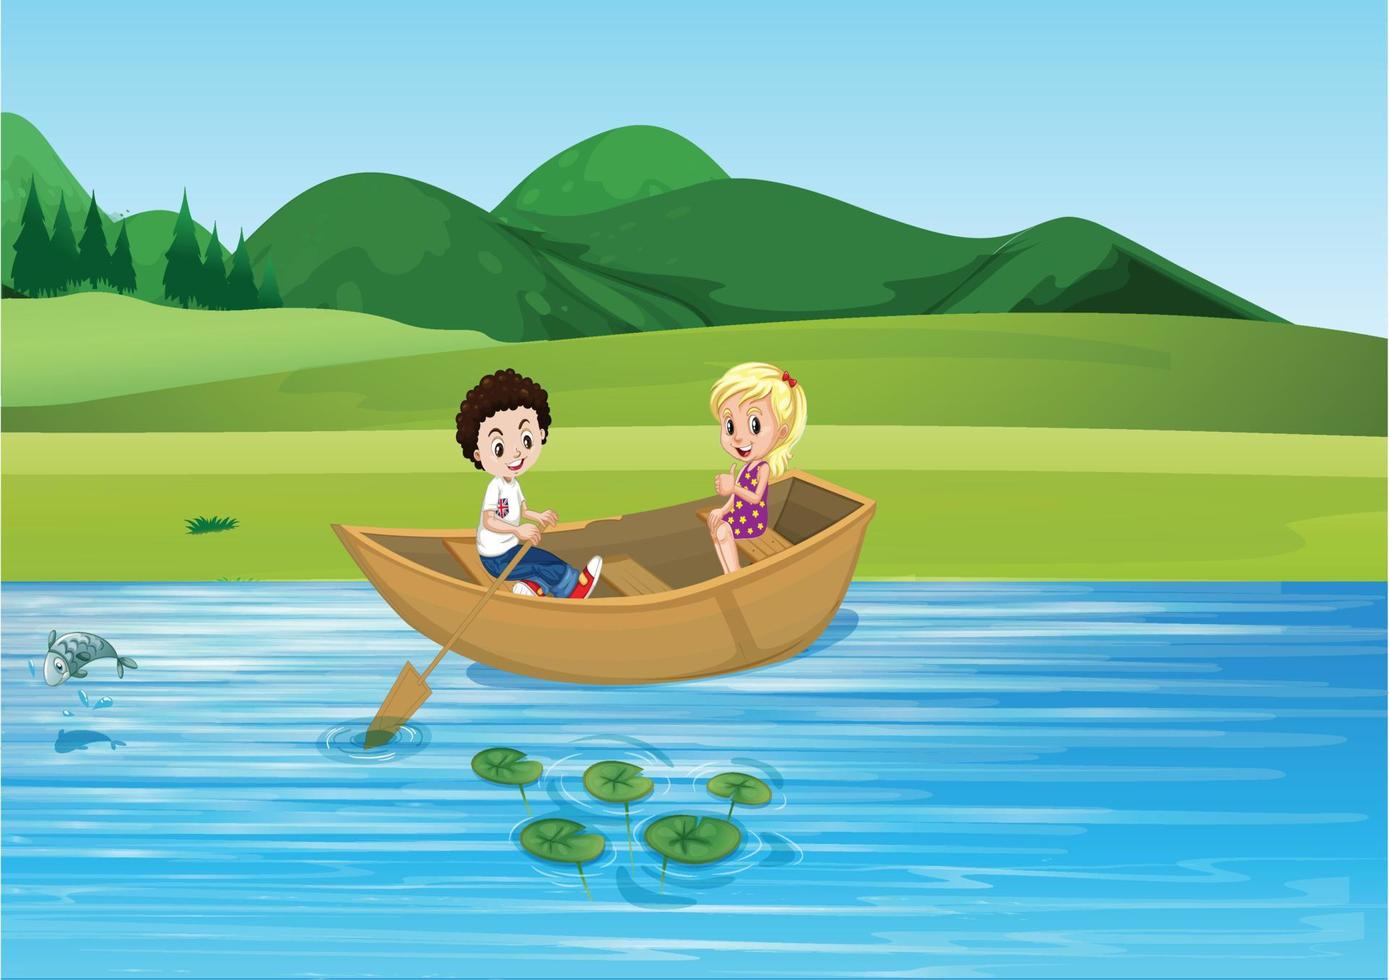 Boating Kids illustration vector